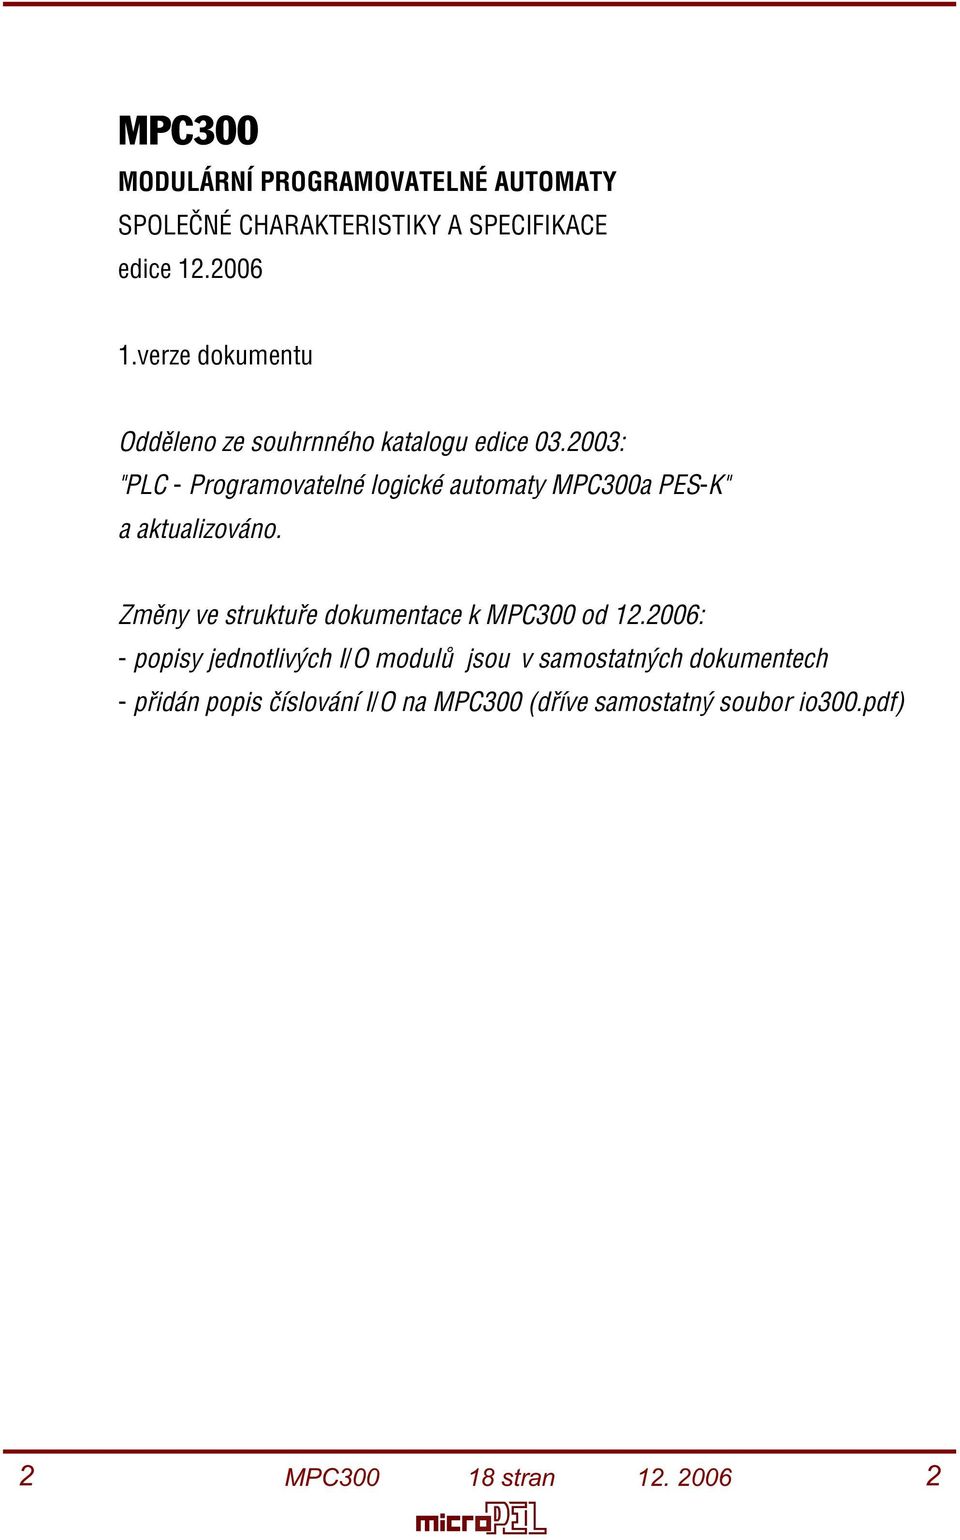 2003: "PLC - Programovatelné logické automaty MPC300a PES-K" a aktualizováno.